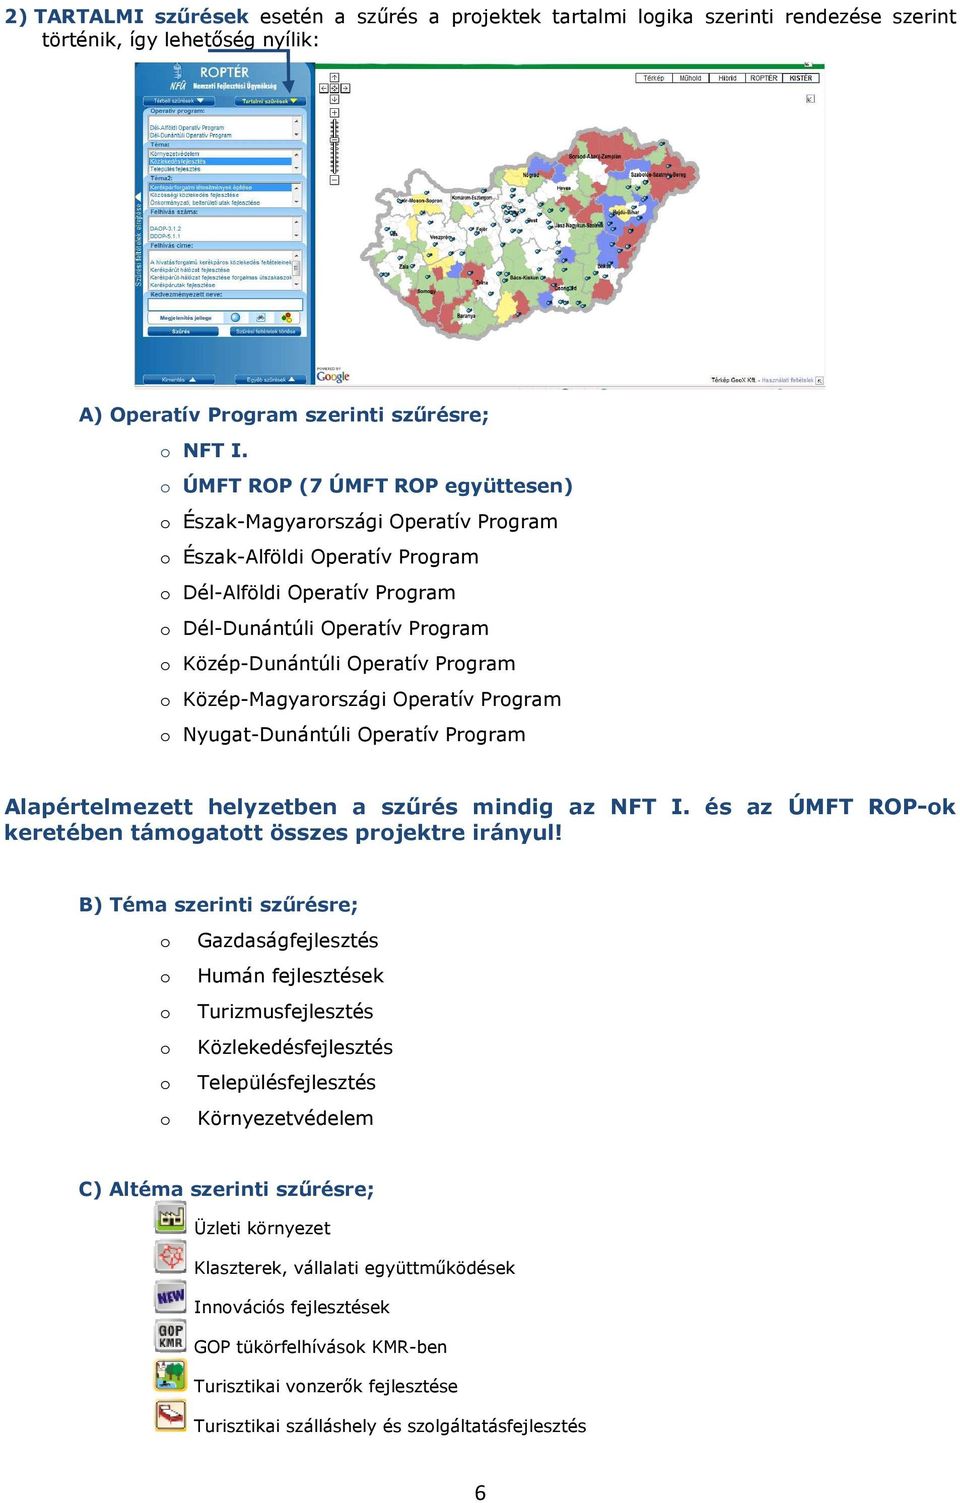 Közép-Magyarrszági Operatív Prgram Nyugat-Dunántúli Operatív Prgram Alapértelmezett helyzetben a szűrés mindig az NFT I. és az ÚMFT ROP-k keretében támgattt összes prjektre irányul!